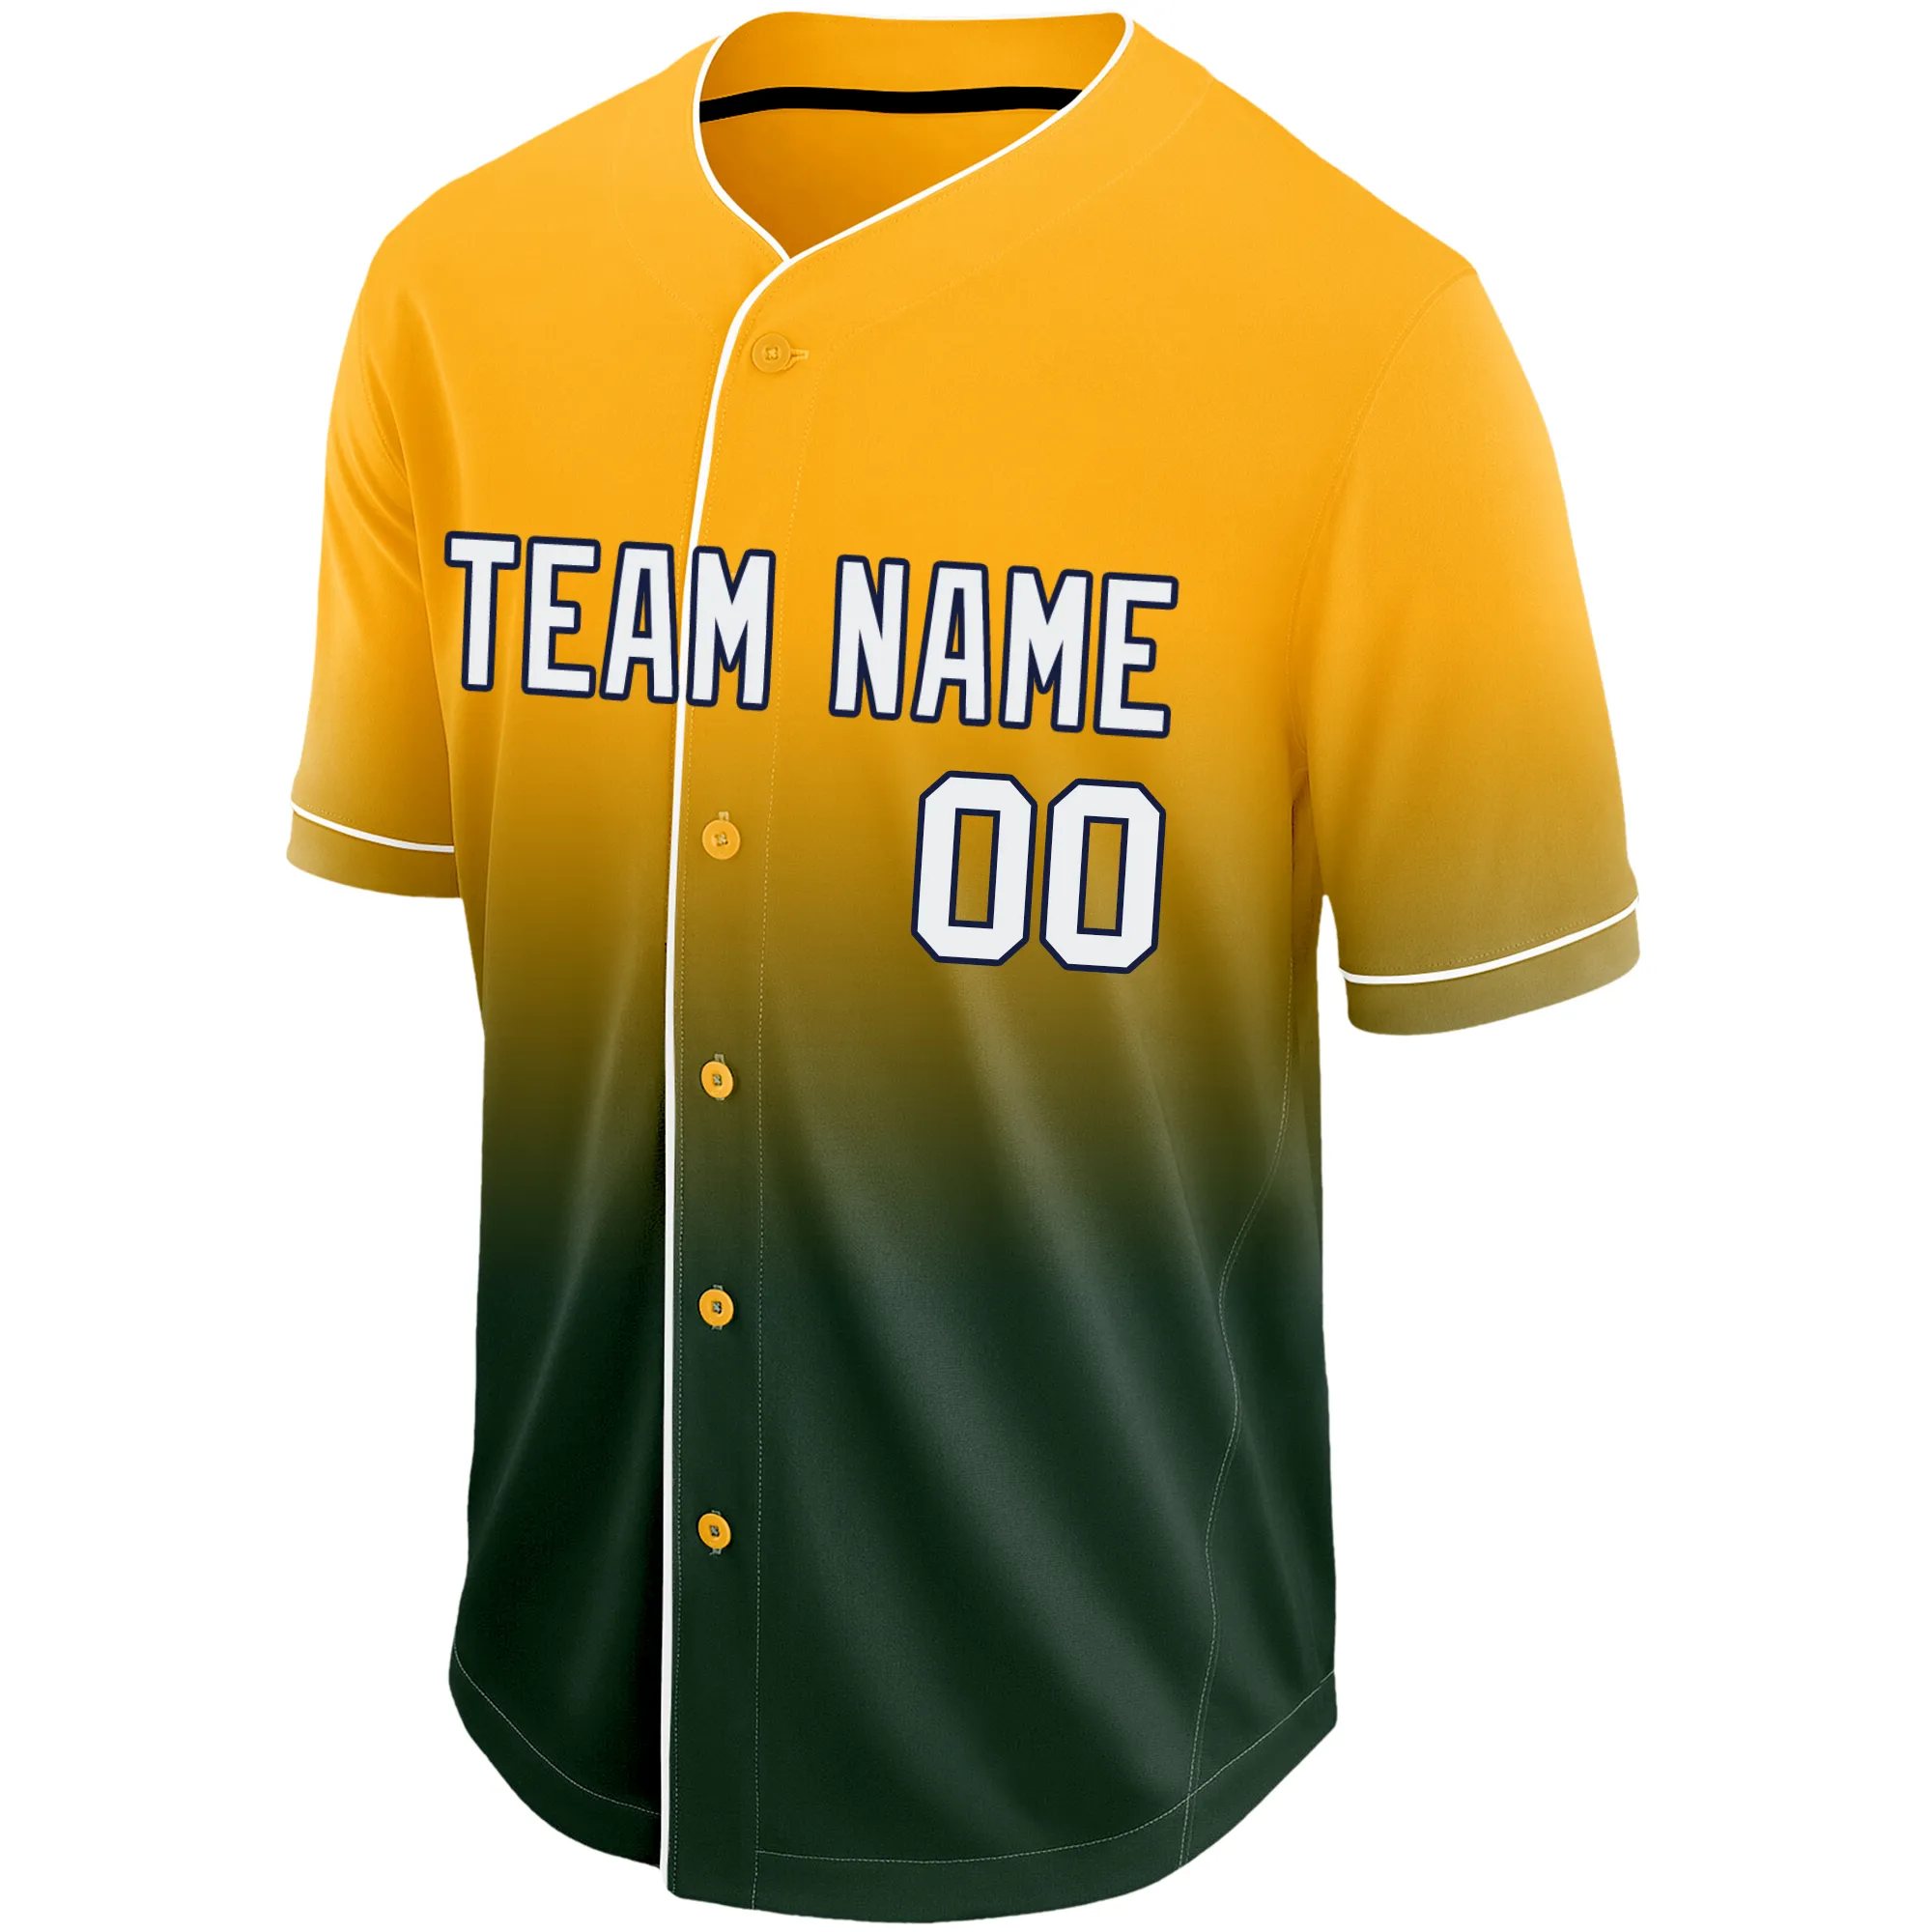 Personalizado Personalizado Jersey De Béisbol Sublimated Team Logonamenumber Uniforme De Para Hombre / Dama / Niños De 17,28 € |